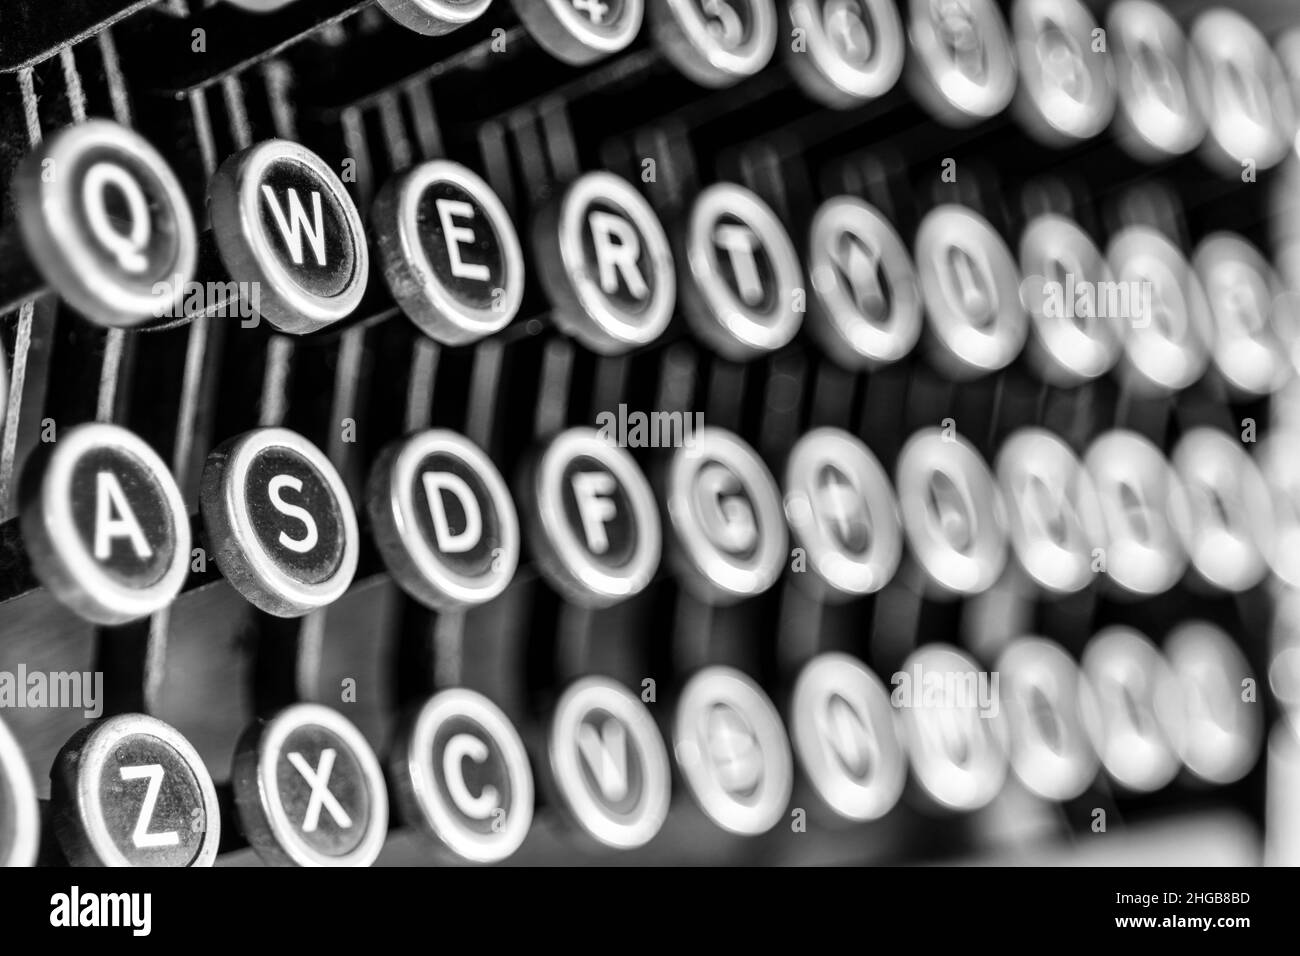 Antike Schreibmaschine mit traditionellen QWERTY-Schlüsseln. Vor dem SMS-Nachrichten verwendeten die Menschen Schreibmaschinen, um durch Schreiben von Briefen zu kommunizieren. Stockfoto